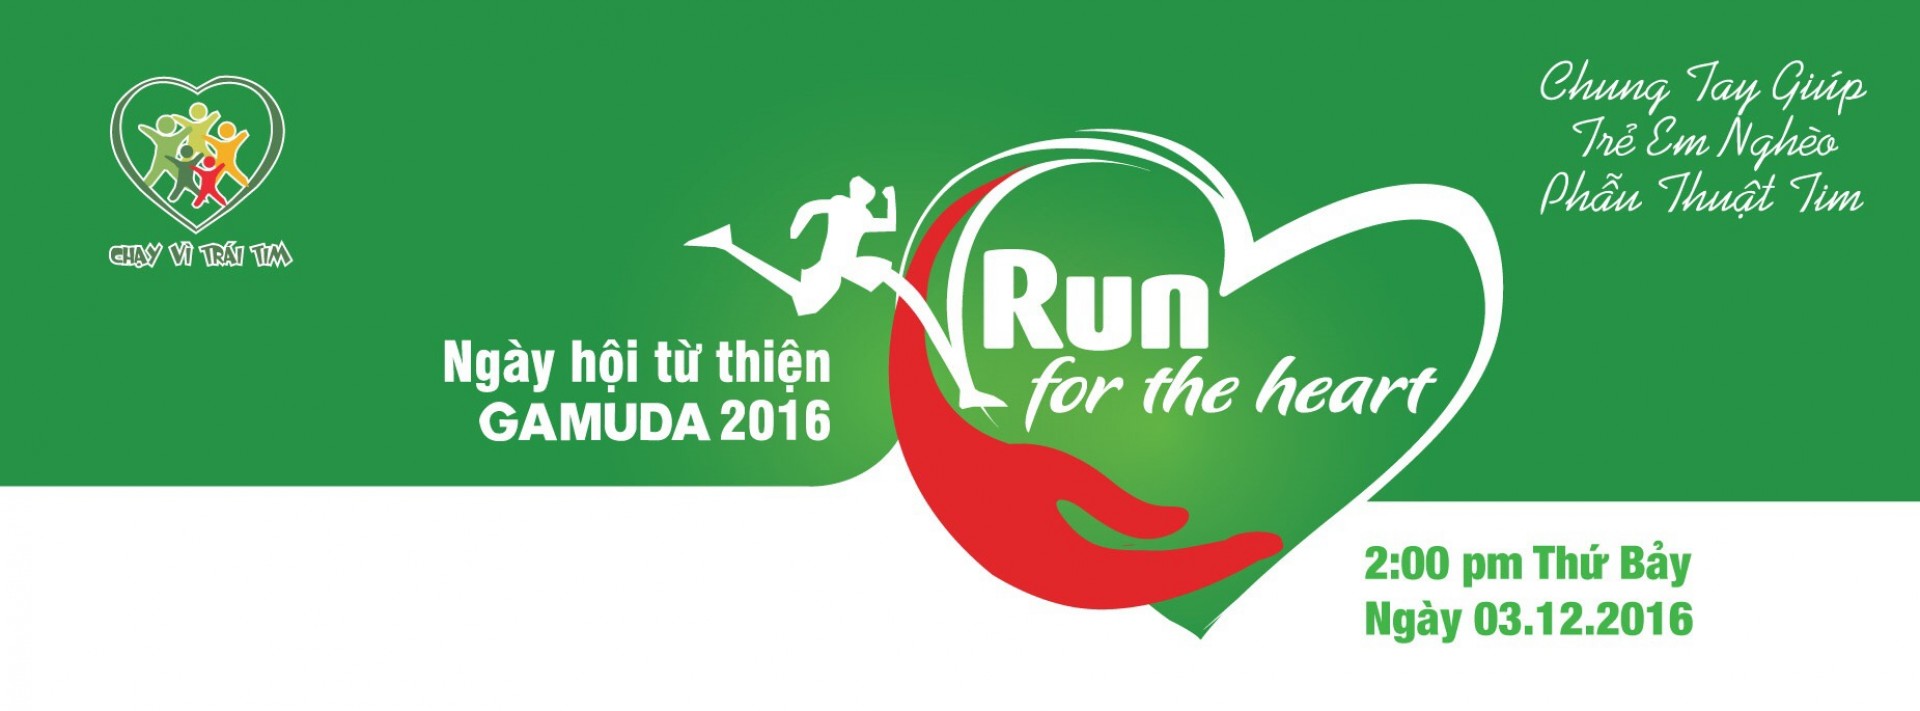 Hơn 1 tỉ đồng được quyên góp trong lễ hội "Chạy vì trái tim 2015"